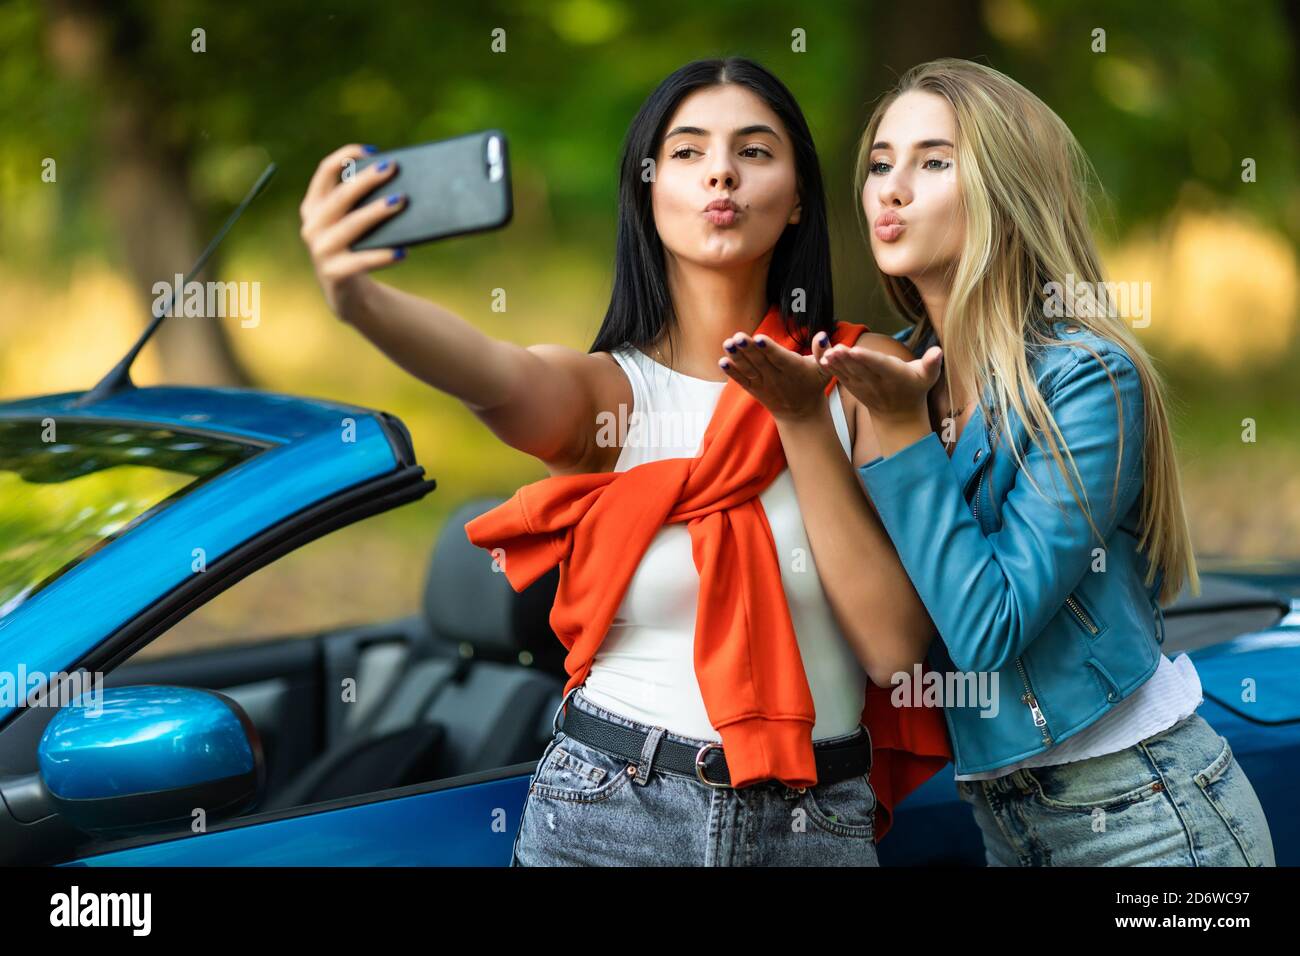 Junge hübsche zwei Frauen Schlag Kuss nehmen ein Selfie während Stehen in der Nähe von Cabrio Auto auf der Straße Stockfoto